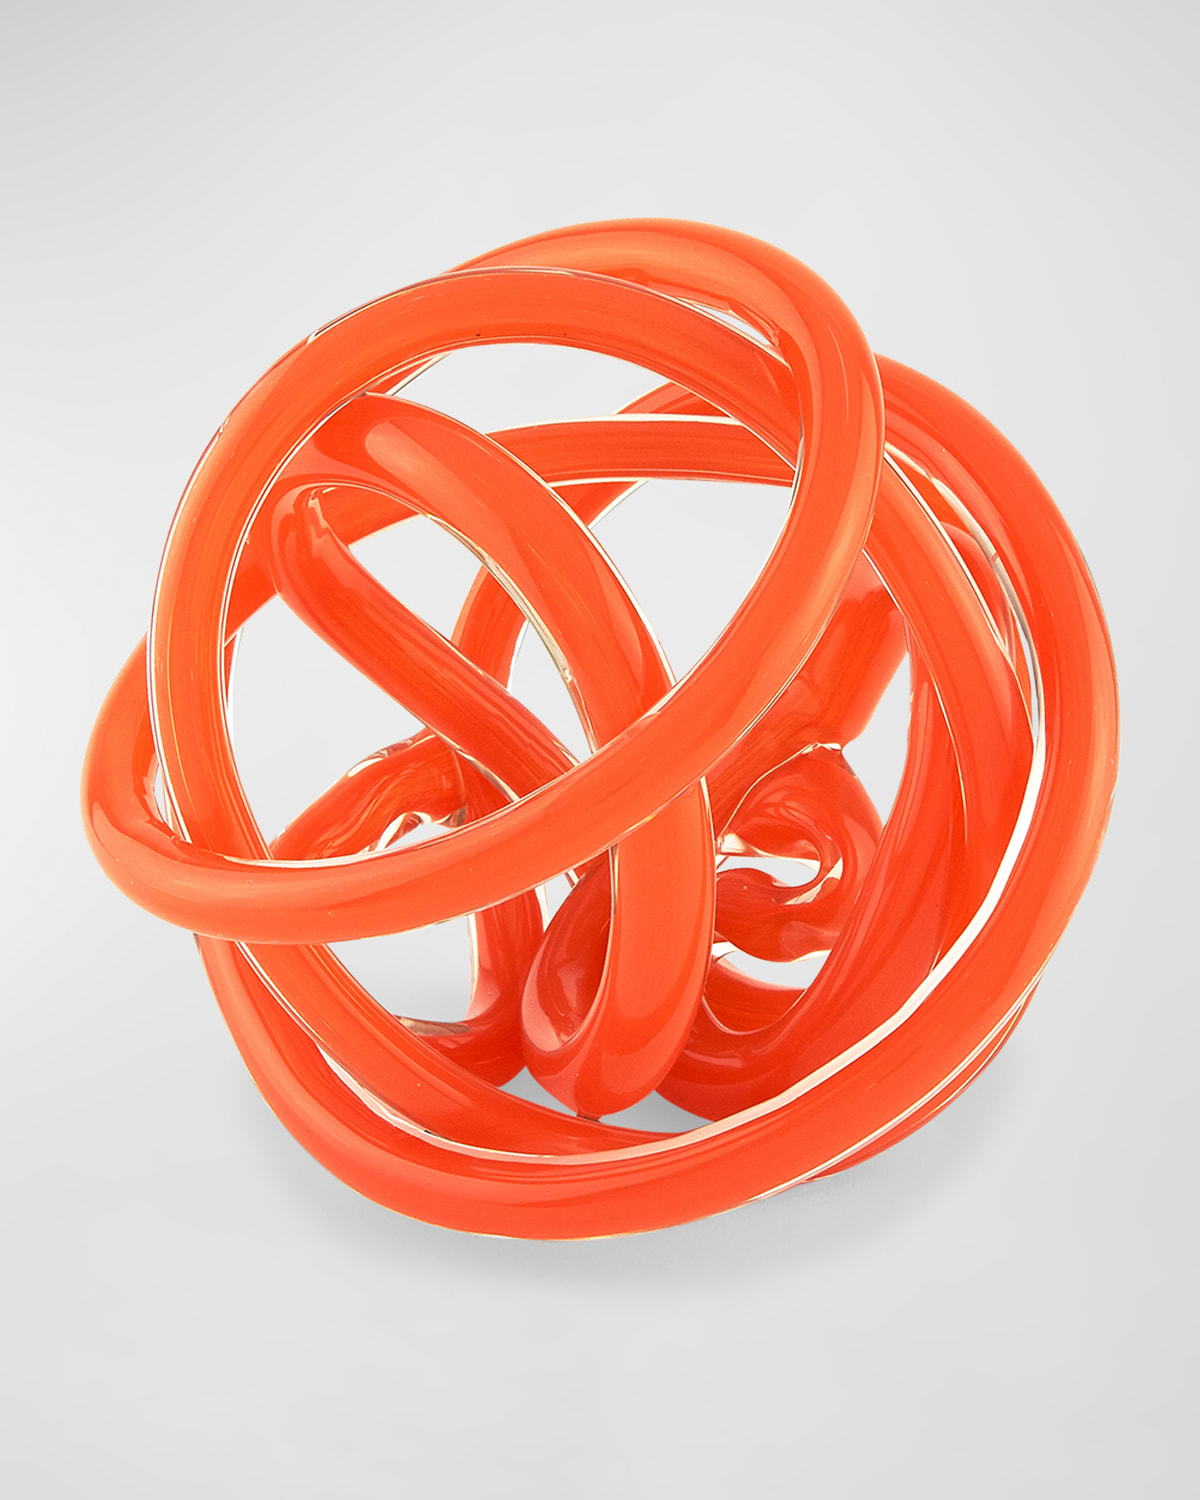 Tizo Handblown Decorative Glass Knot In Orange